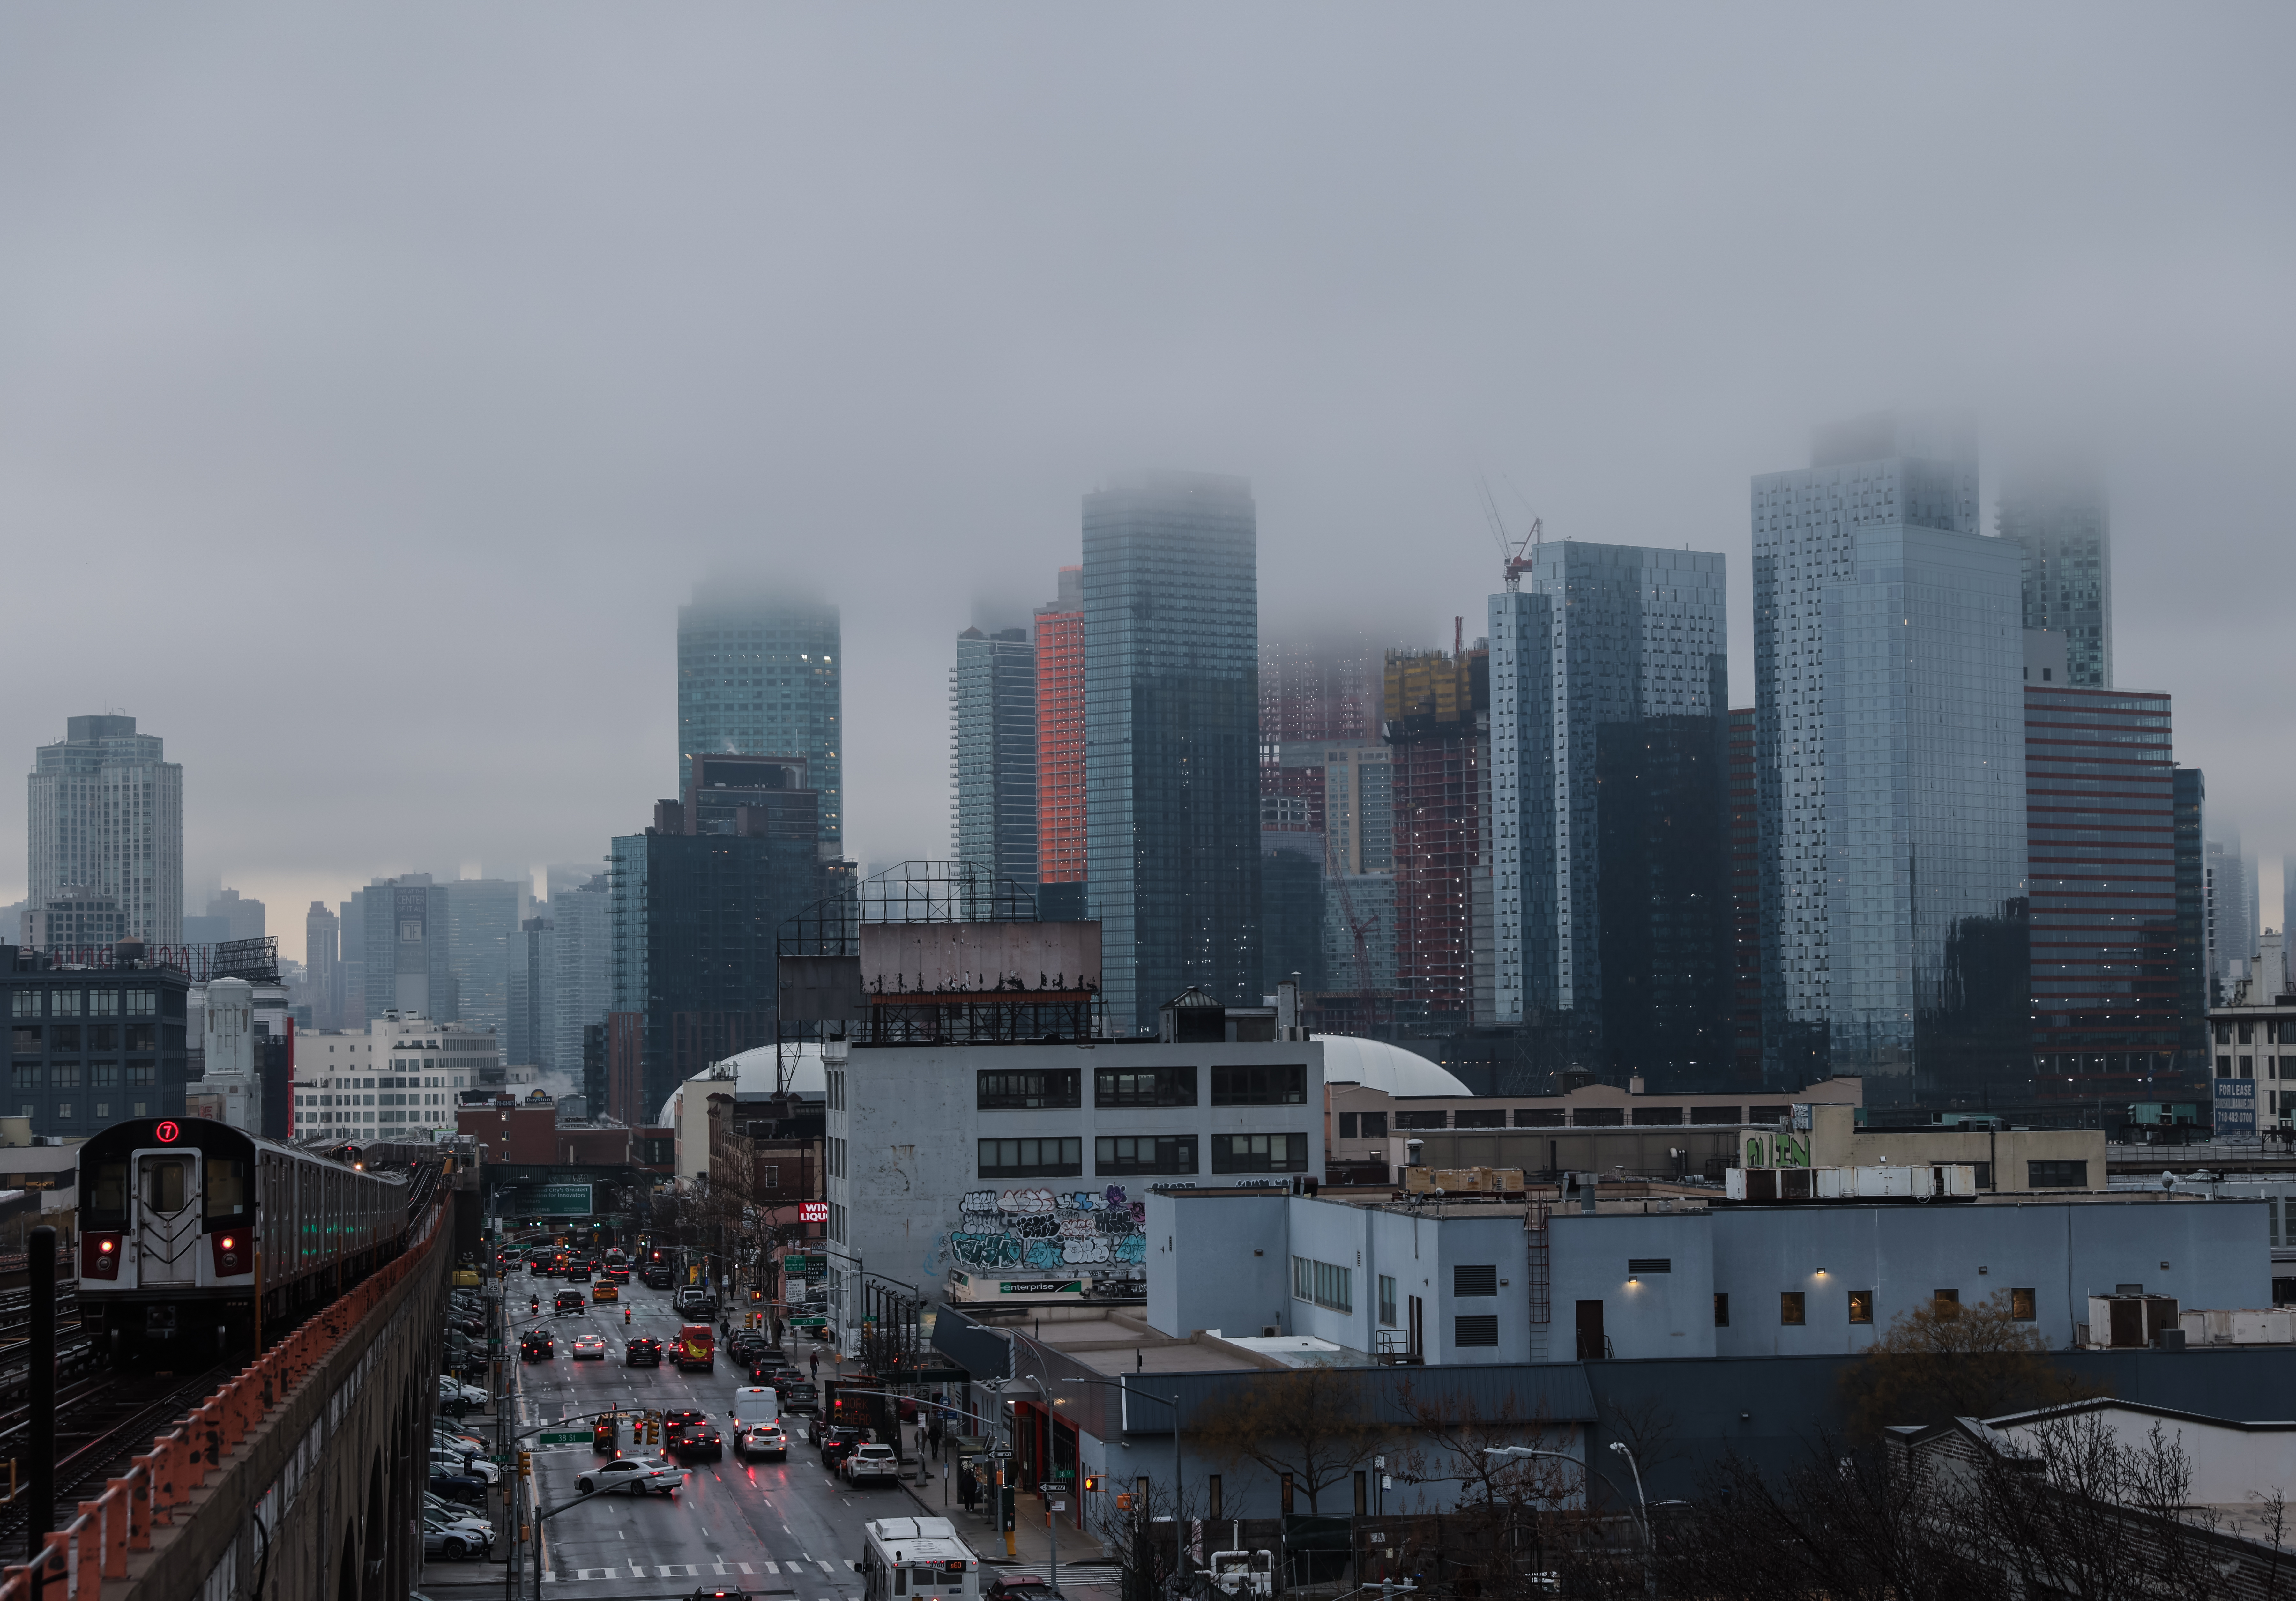 Buildings in Queens shrouded in fog.